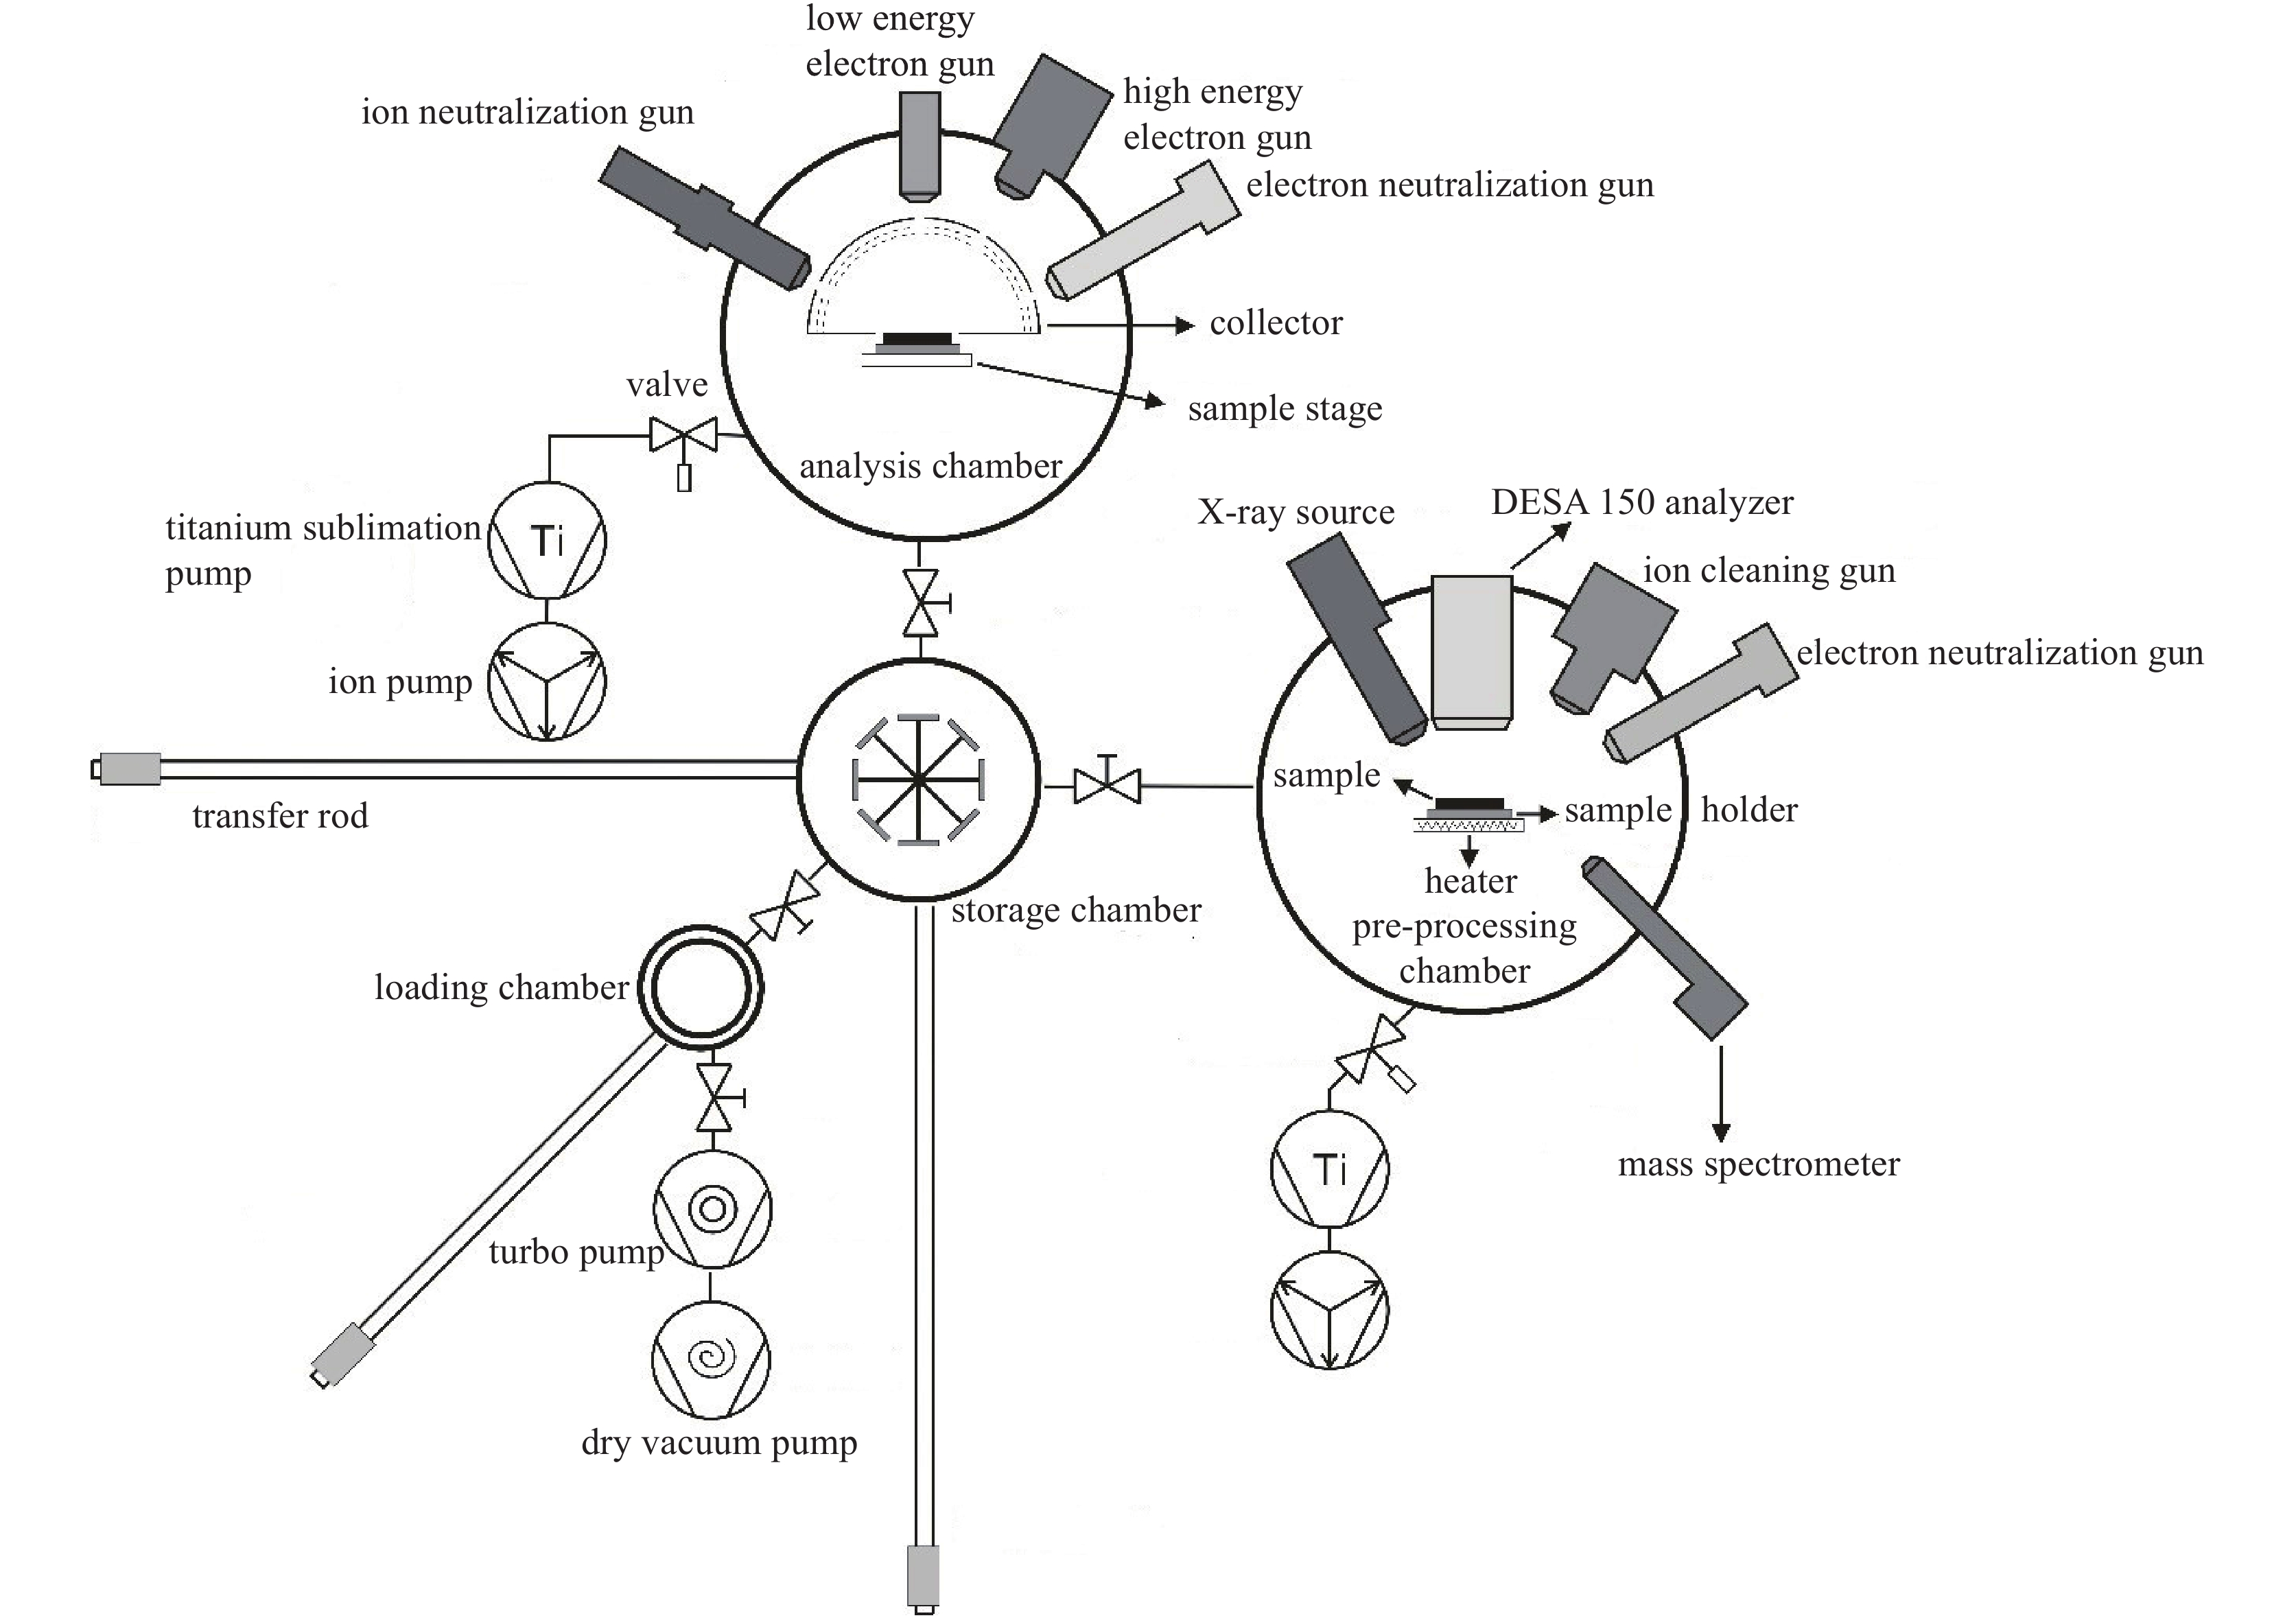 Schematic diagram of the apparatus